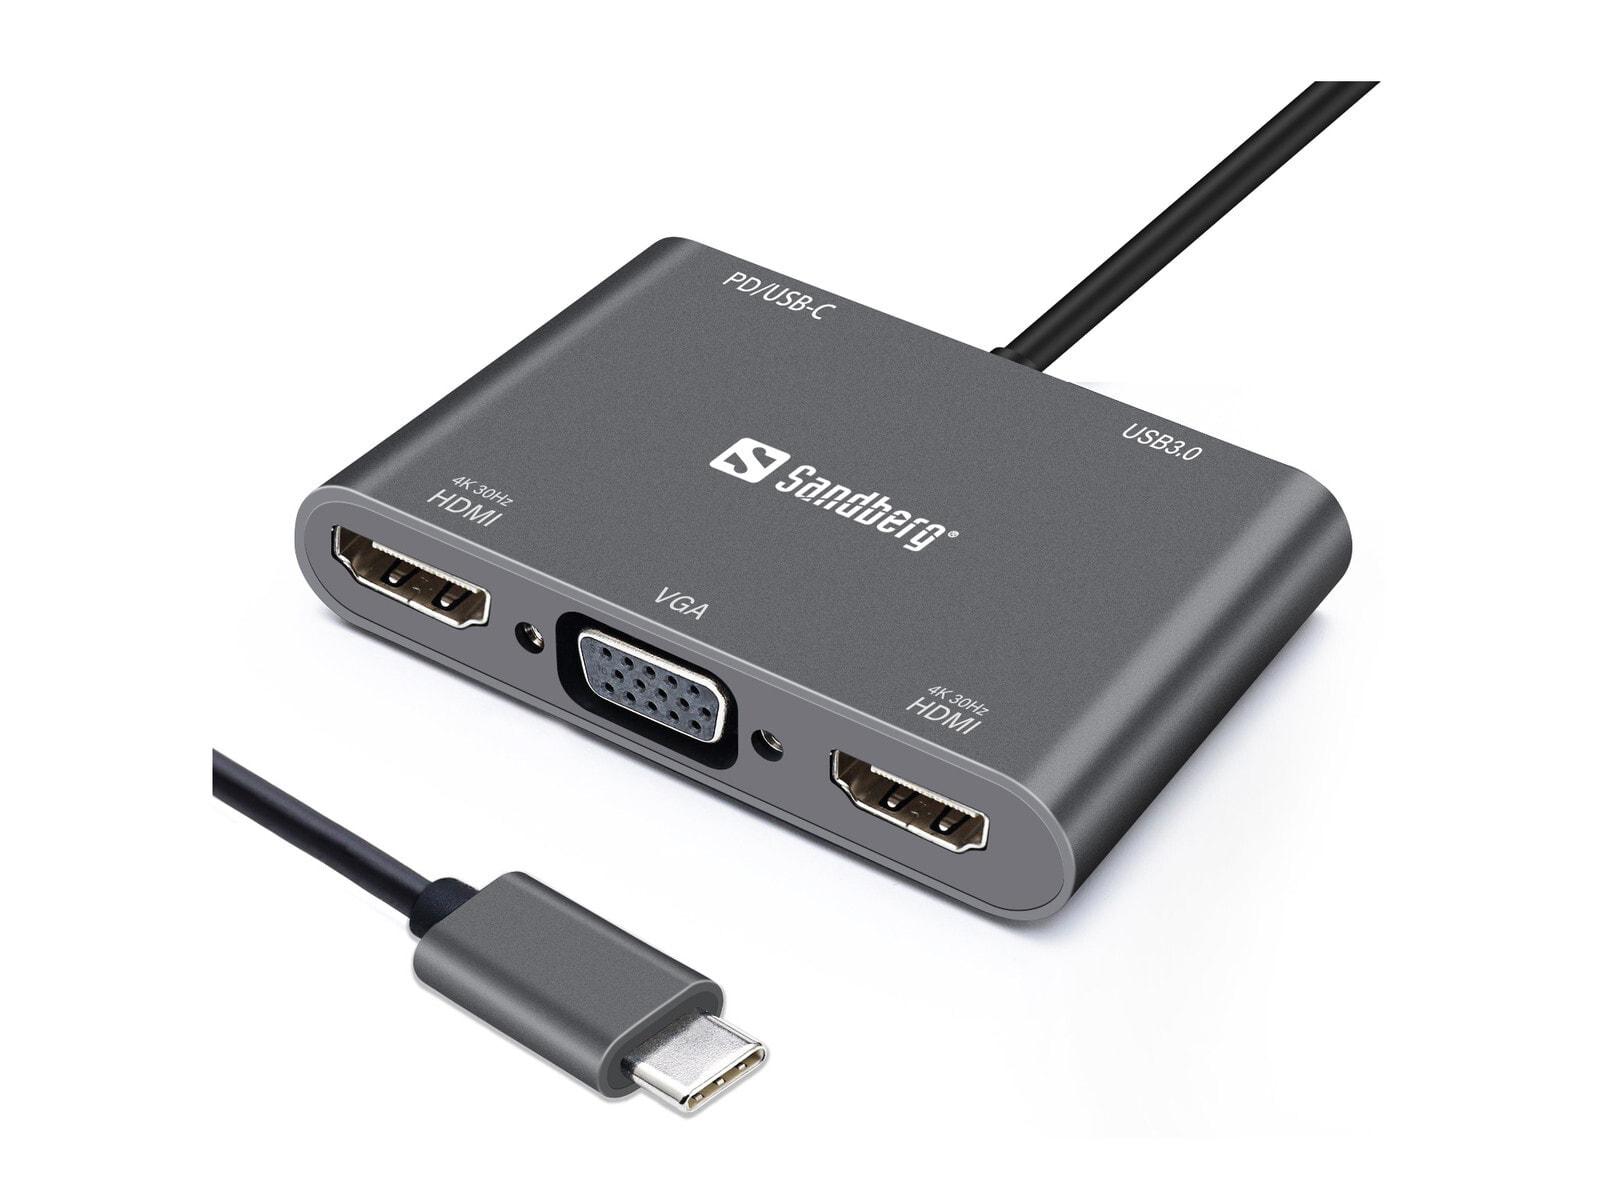 Sandberg USB-C Dock 2xHDMI+1xVGA+USB+PD 136-35